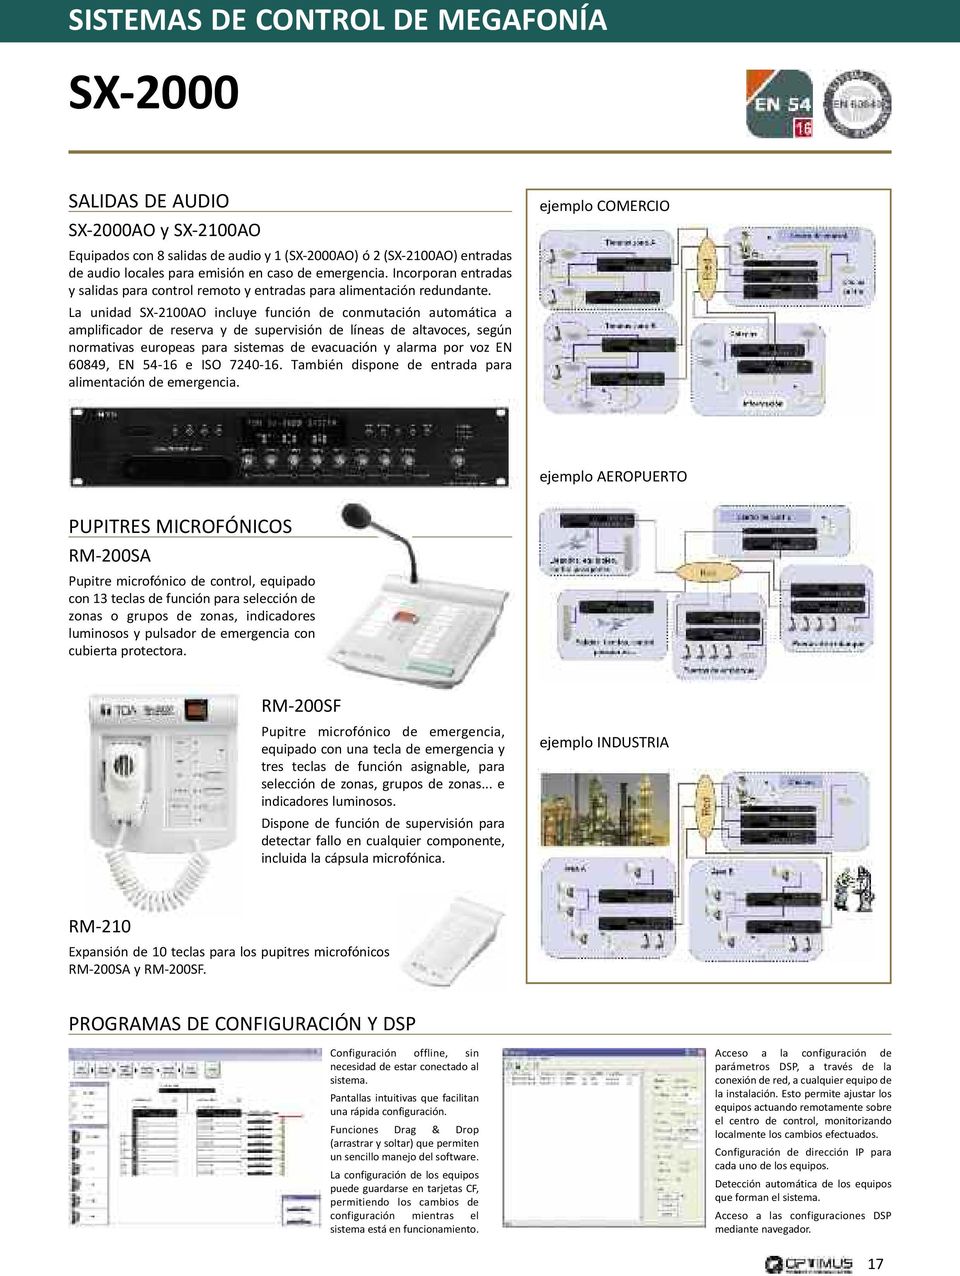 La unidad SX-2100AO incluye función de conmutación automática a amplificador de reserva y de supervisión de líneas de altavoces, según normativas europeas para sistemas de evacuación y alarma por voz